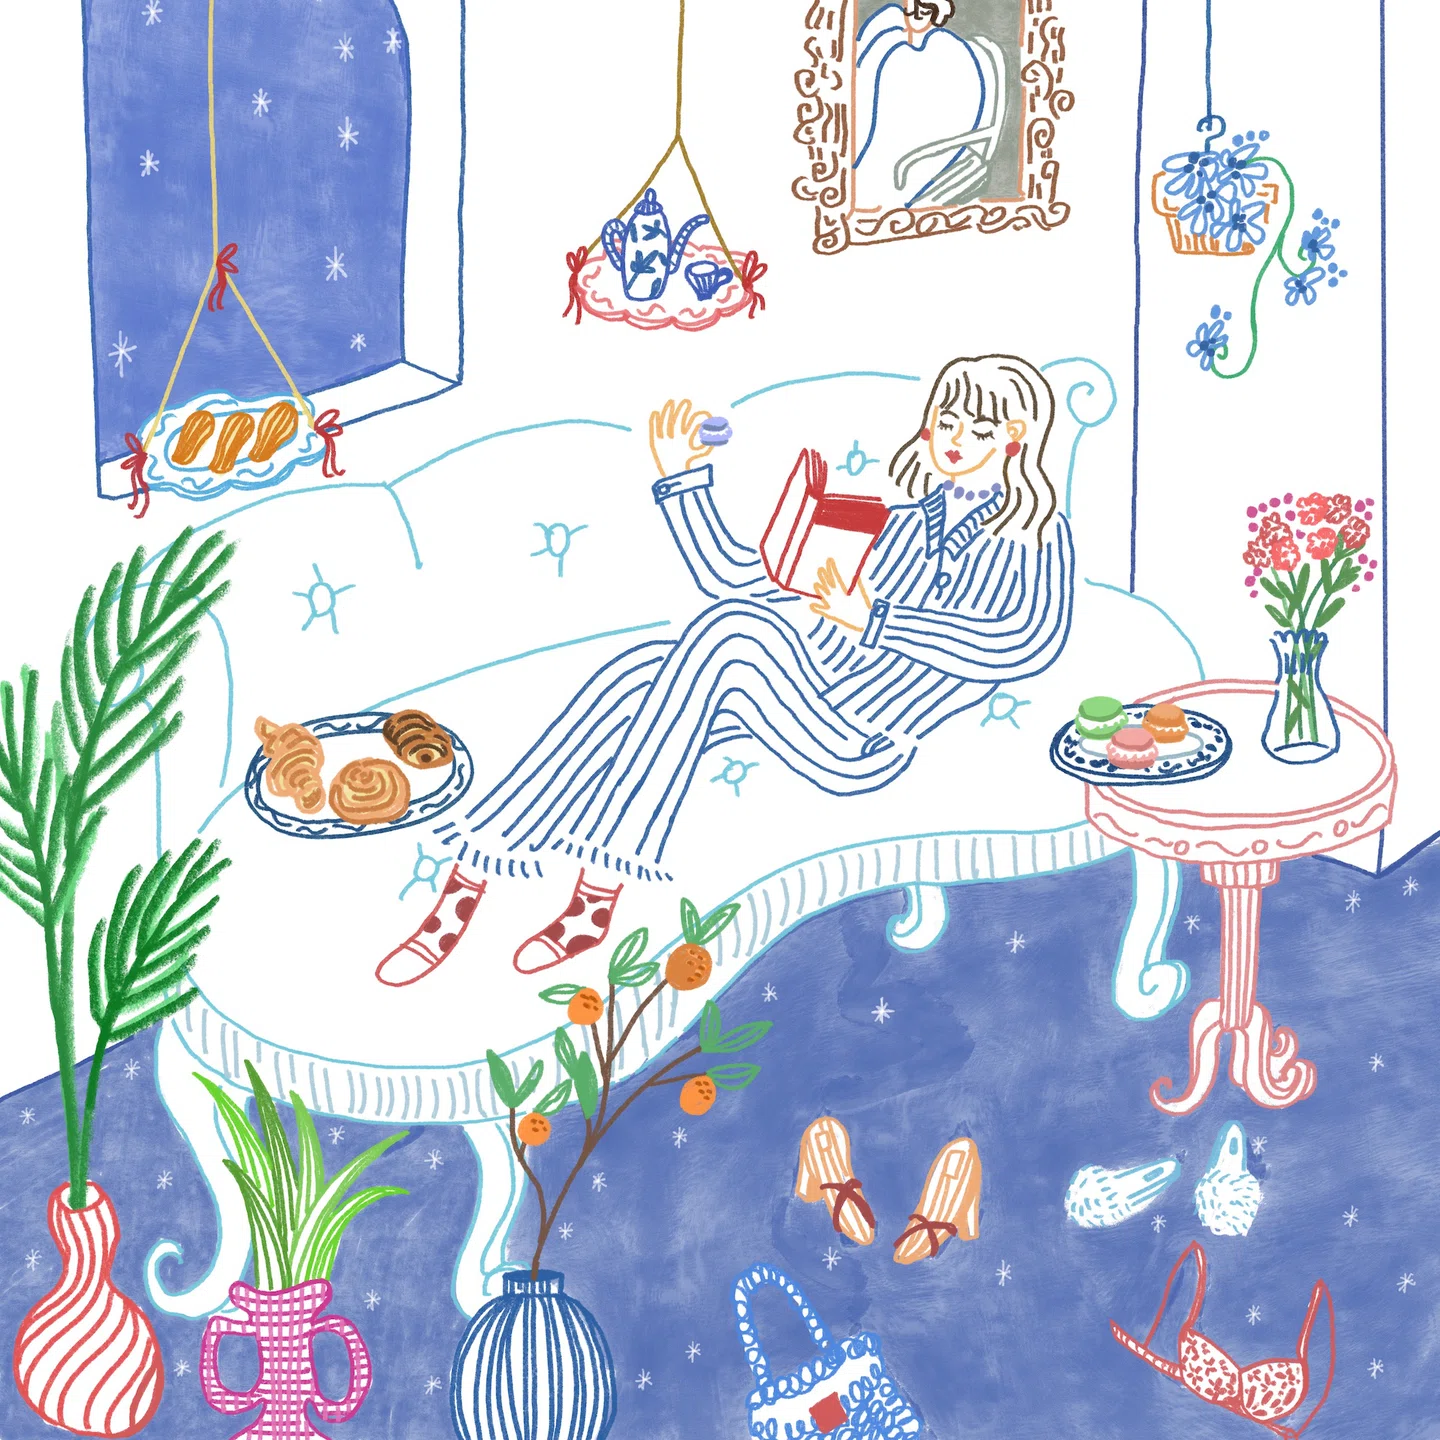 Os diários ilustrativos observacionais de Irene Chung a ajudam a encontrar conforto ao passar um tempo sozinha